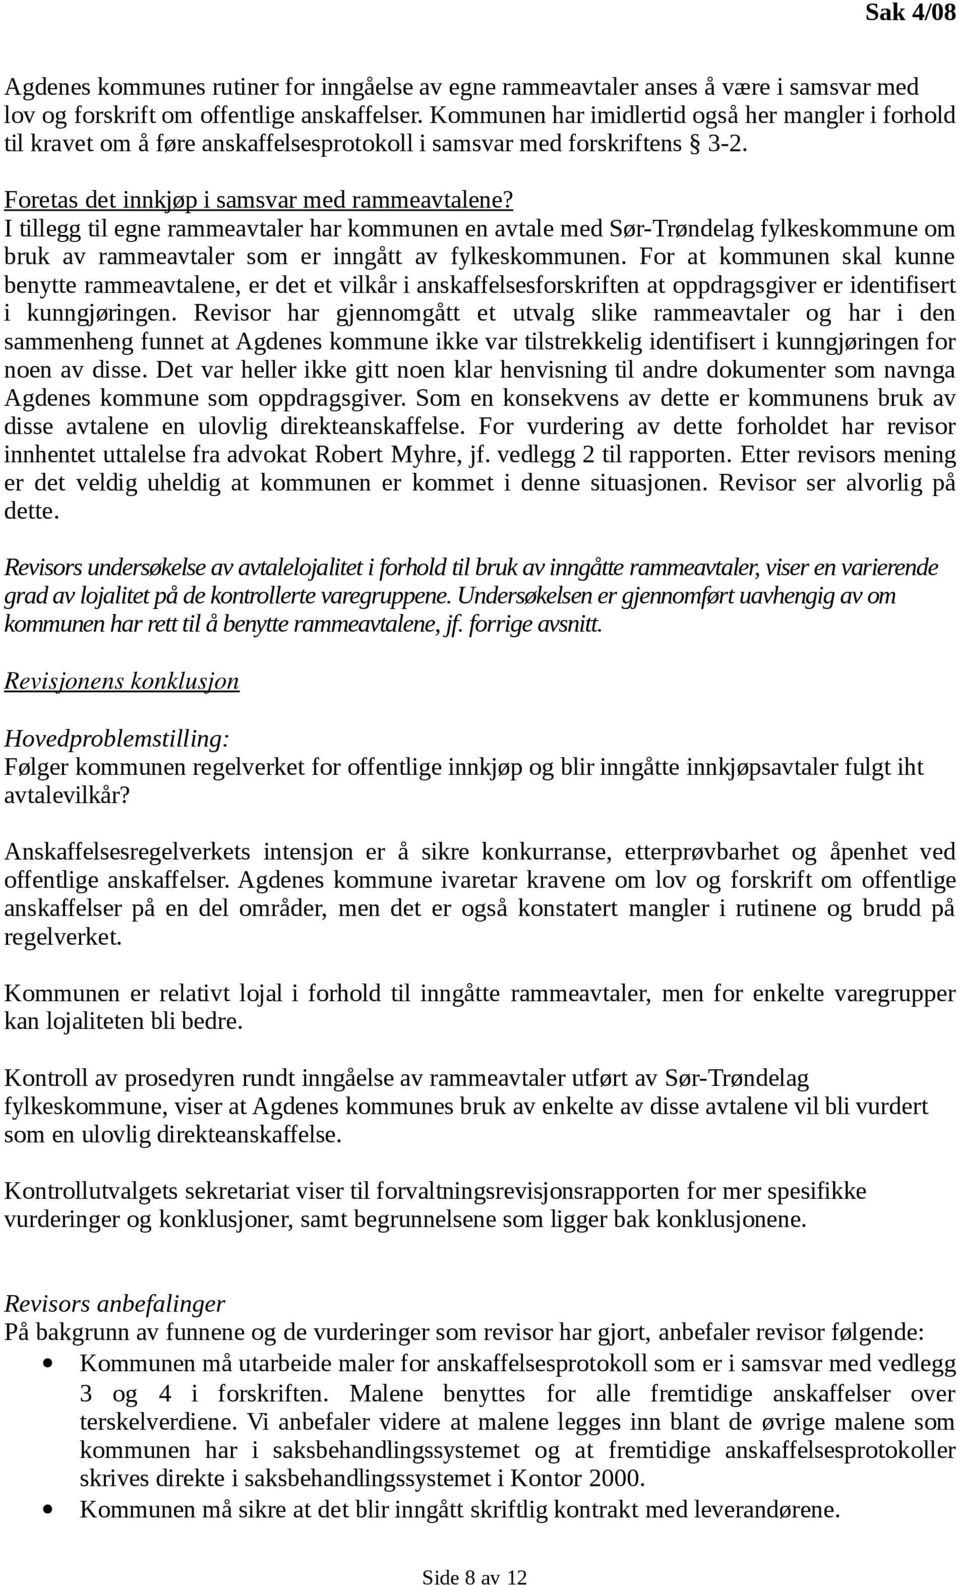 I tillegg til egne rammeavtaler har kommunen en avtale med Sør-Trøndelag fylkeskommune om bruk av rammeavtaler som er inngått av fylkeskommunen.